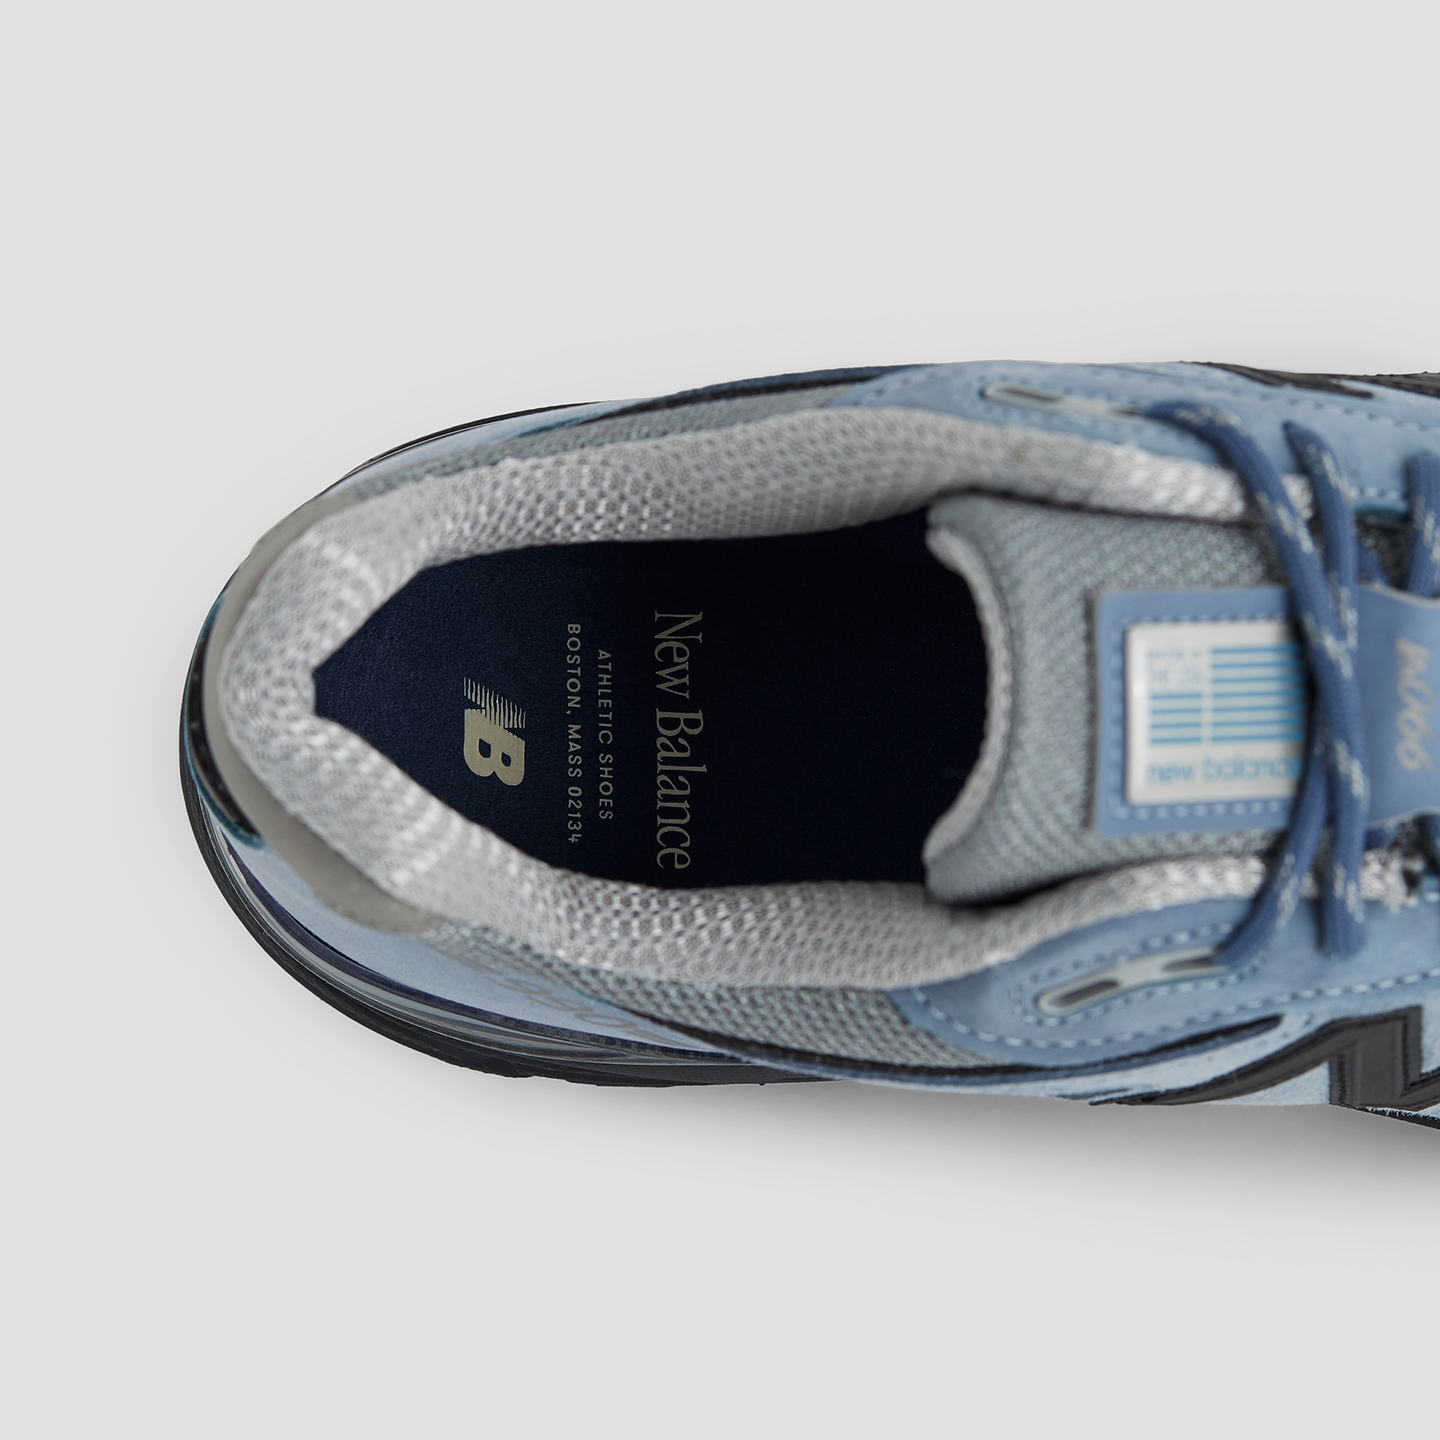 Pánské boty New Balance U990BB4 – modré